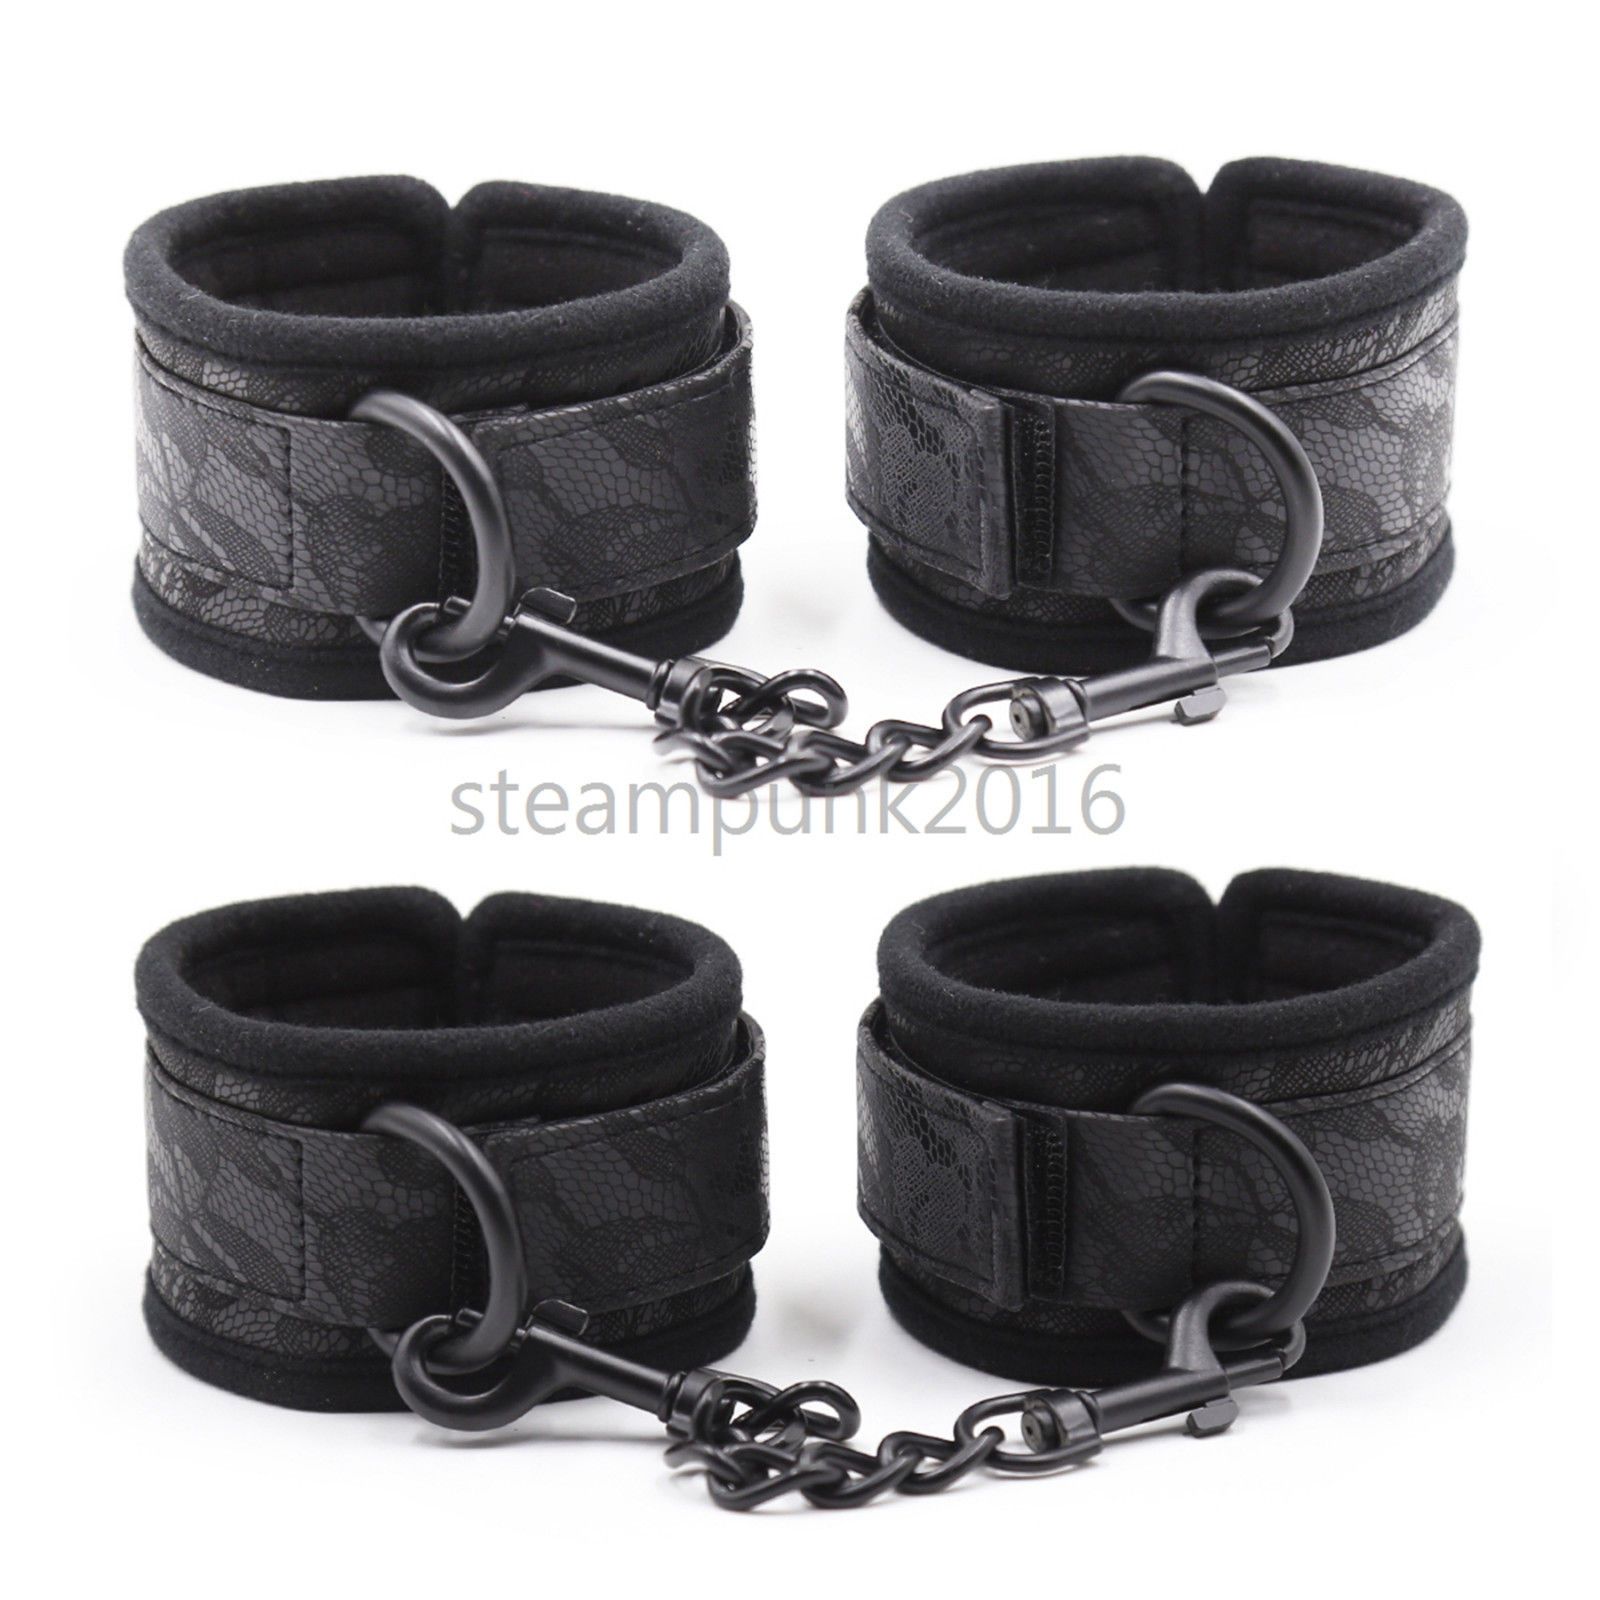 Handcuffs&Anklecuffs